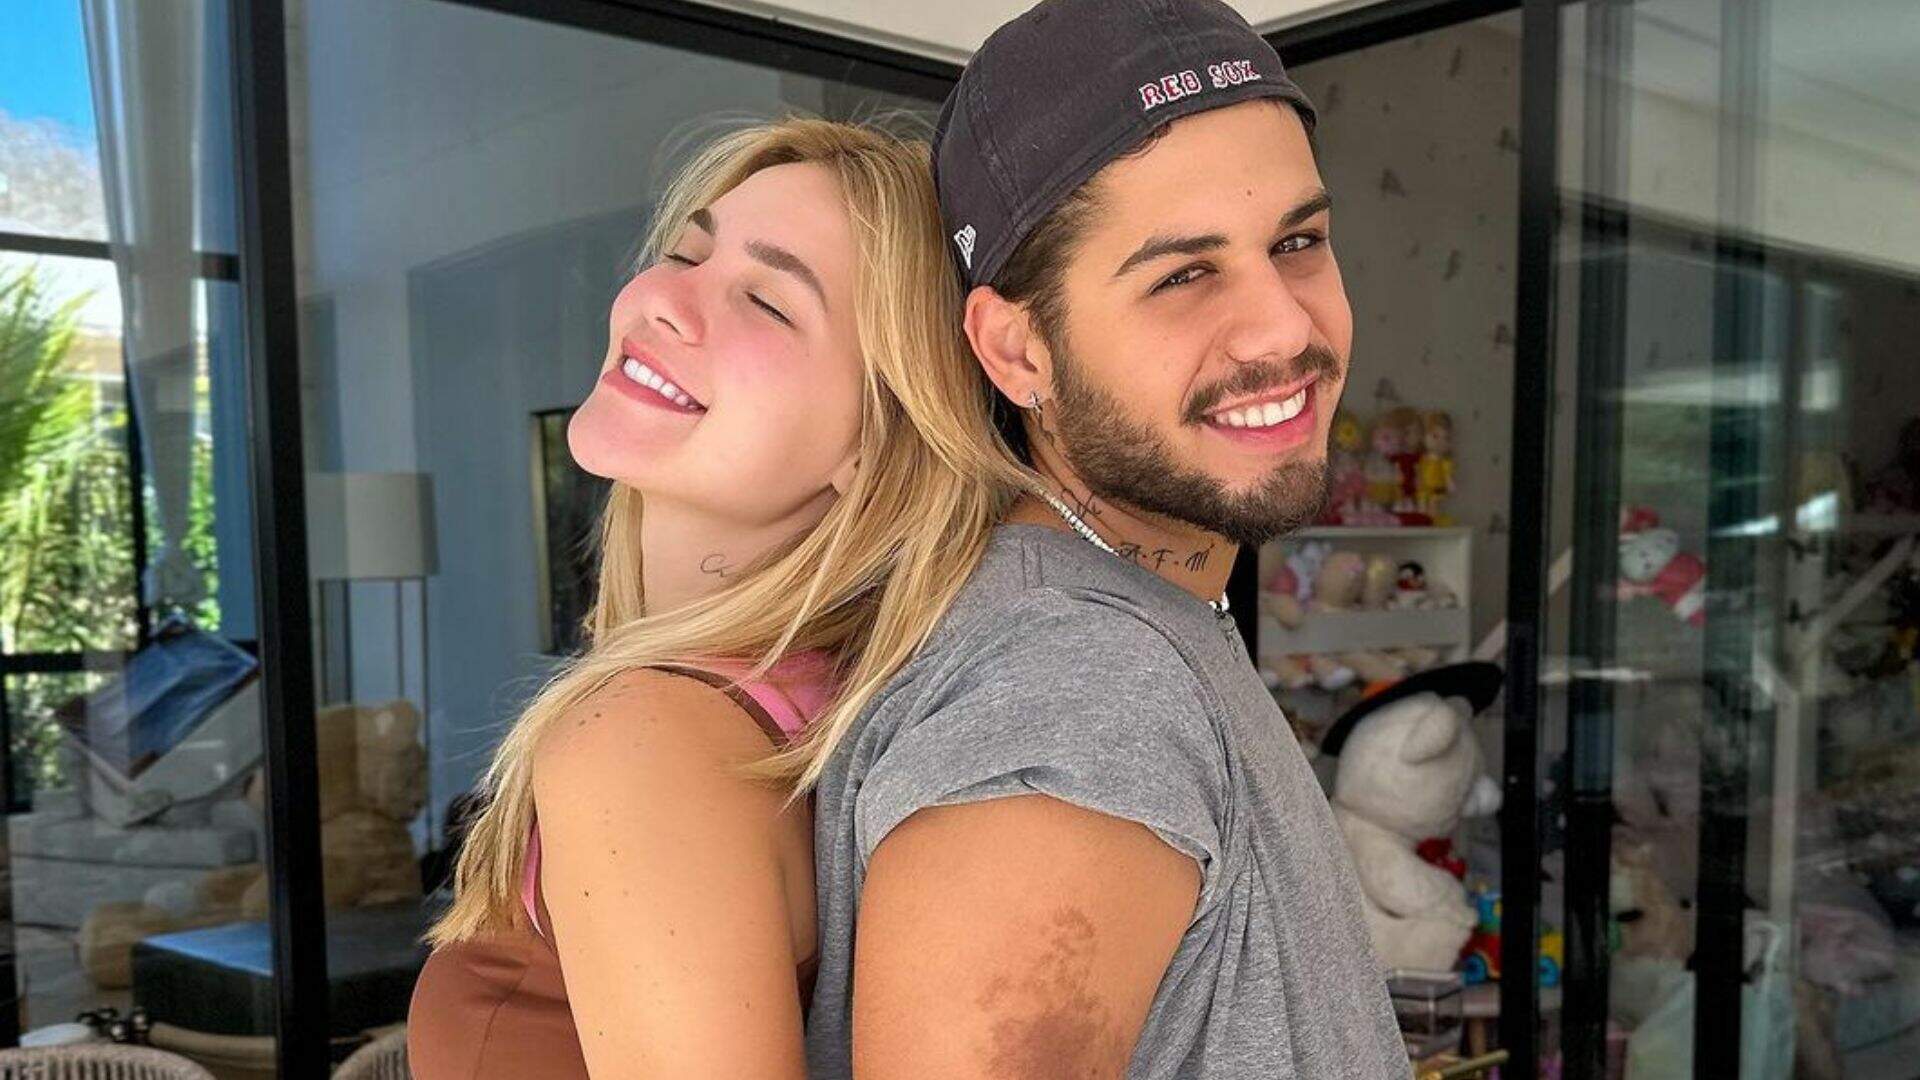 Prova de amor! Virginia Fonseca e Zé Felipe celebram seu relacionamento com tatuagens idênticas - Metropolitana FM